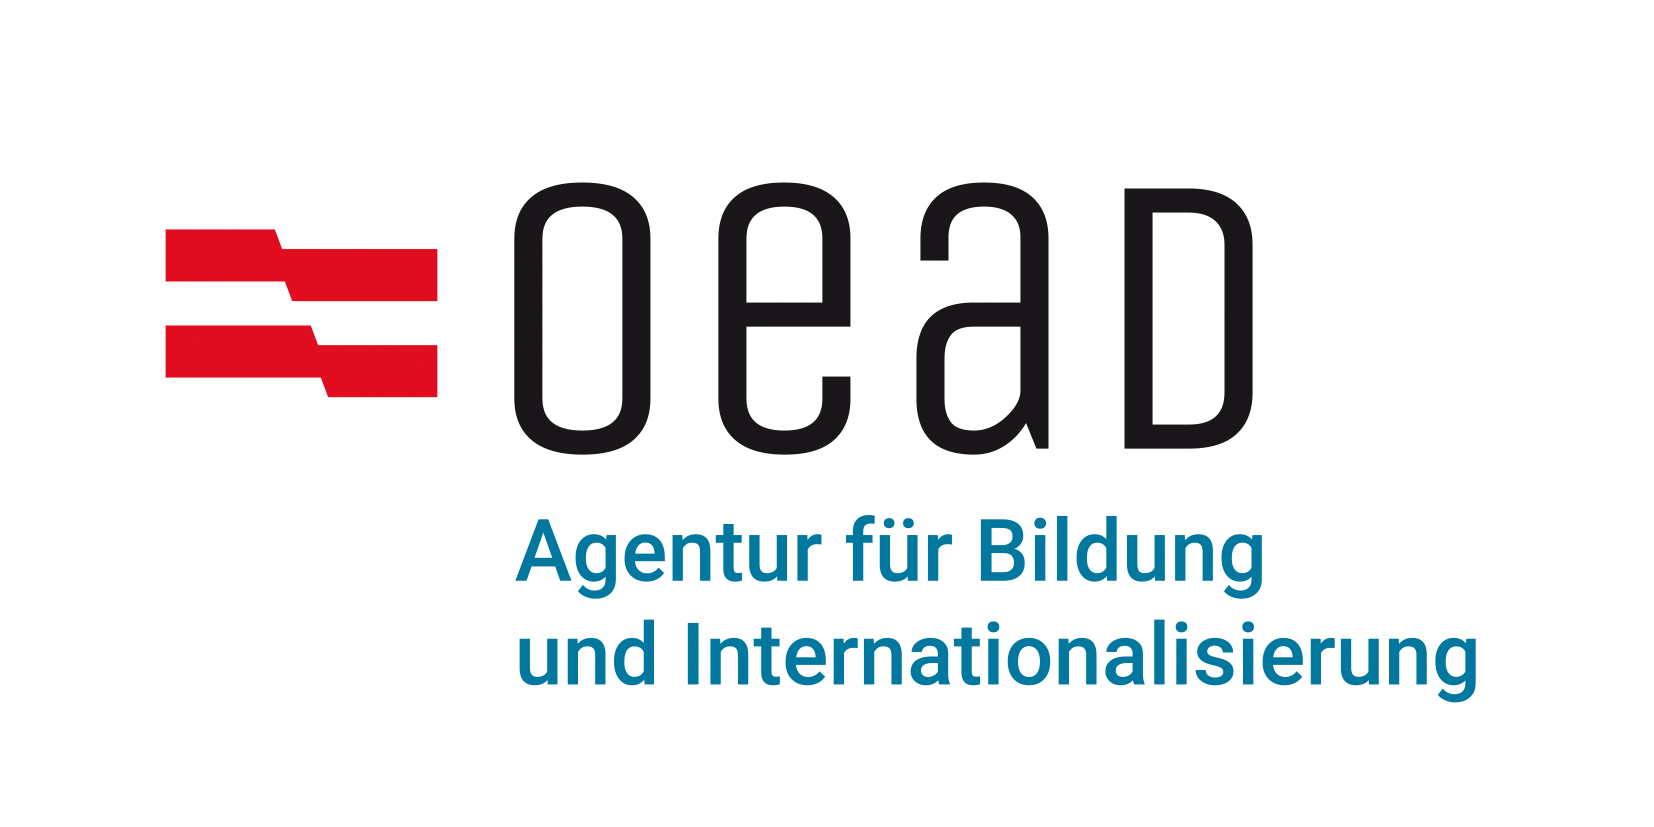 OeAD_-_Agentur_für_Bildung_und_Internationalisierung_nquestion